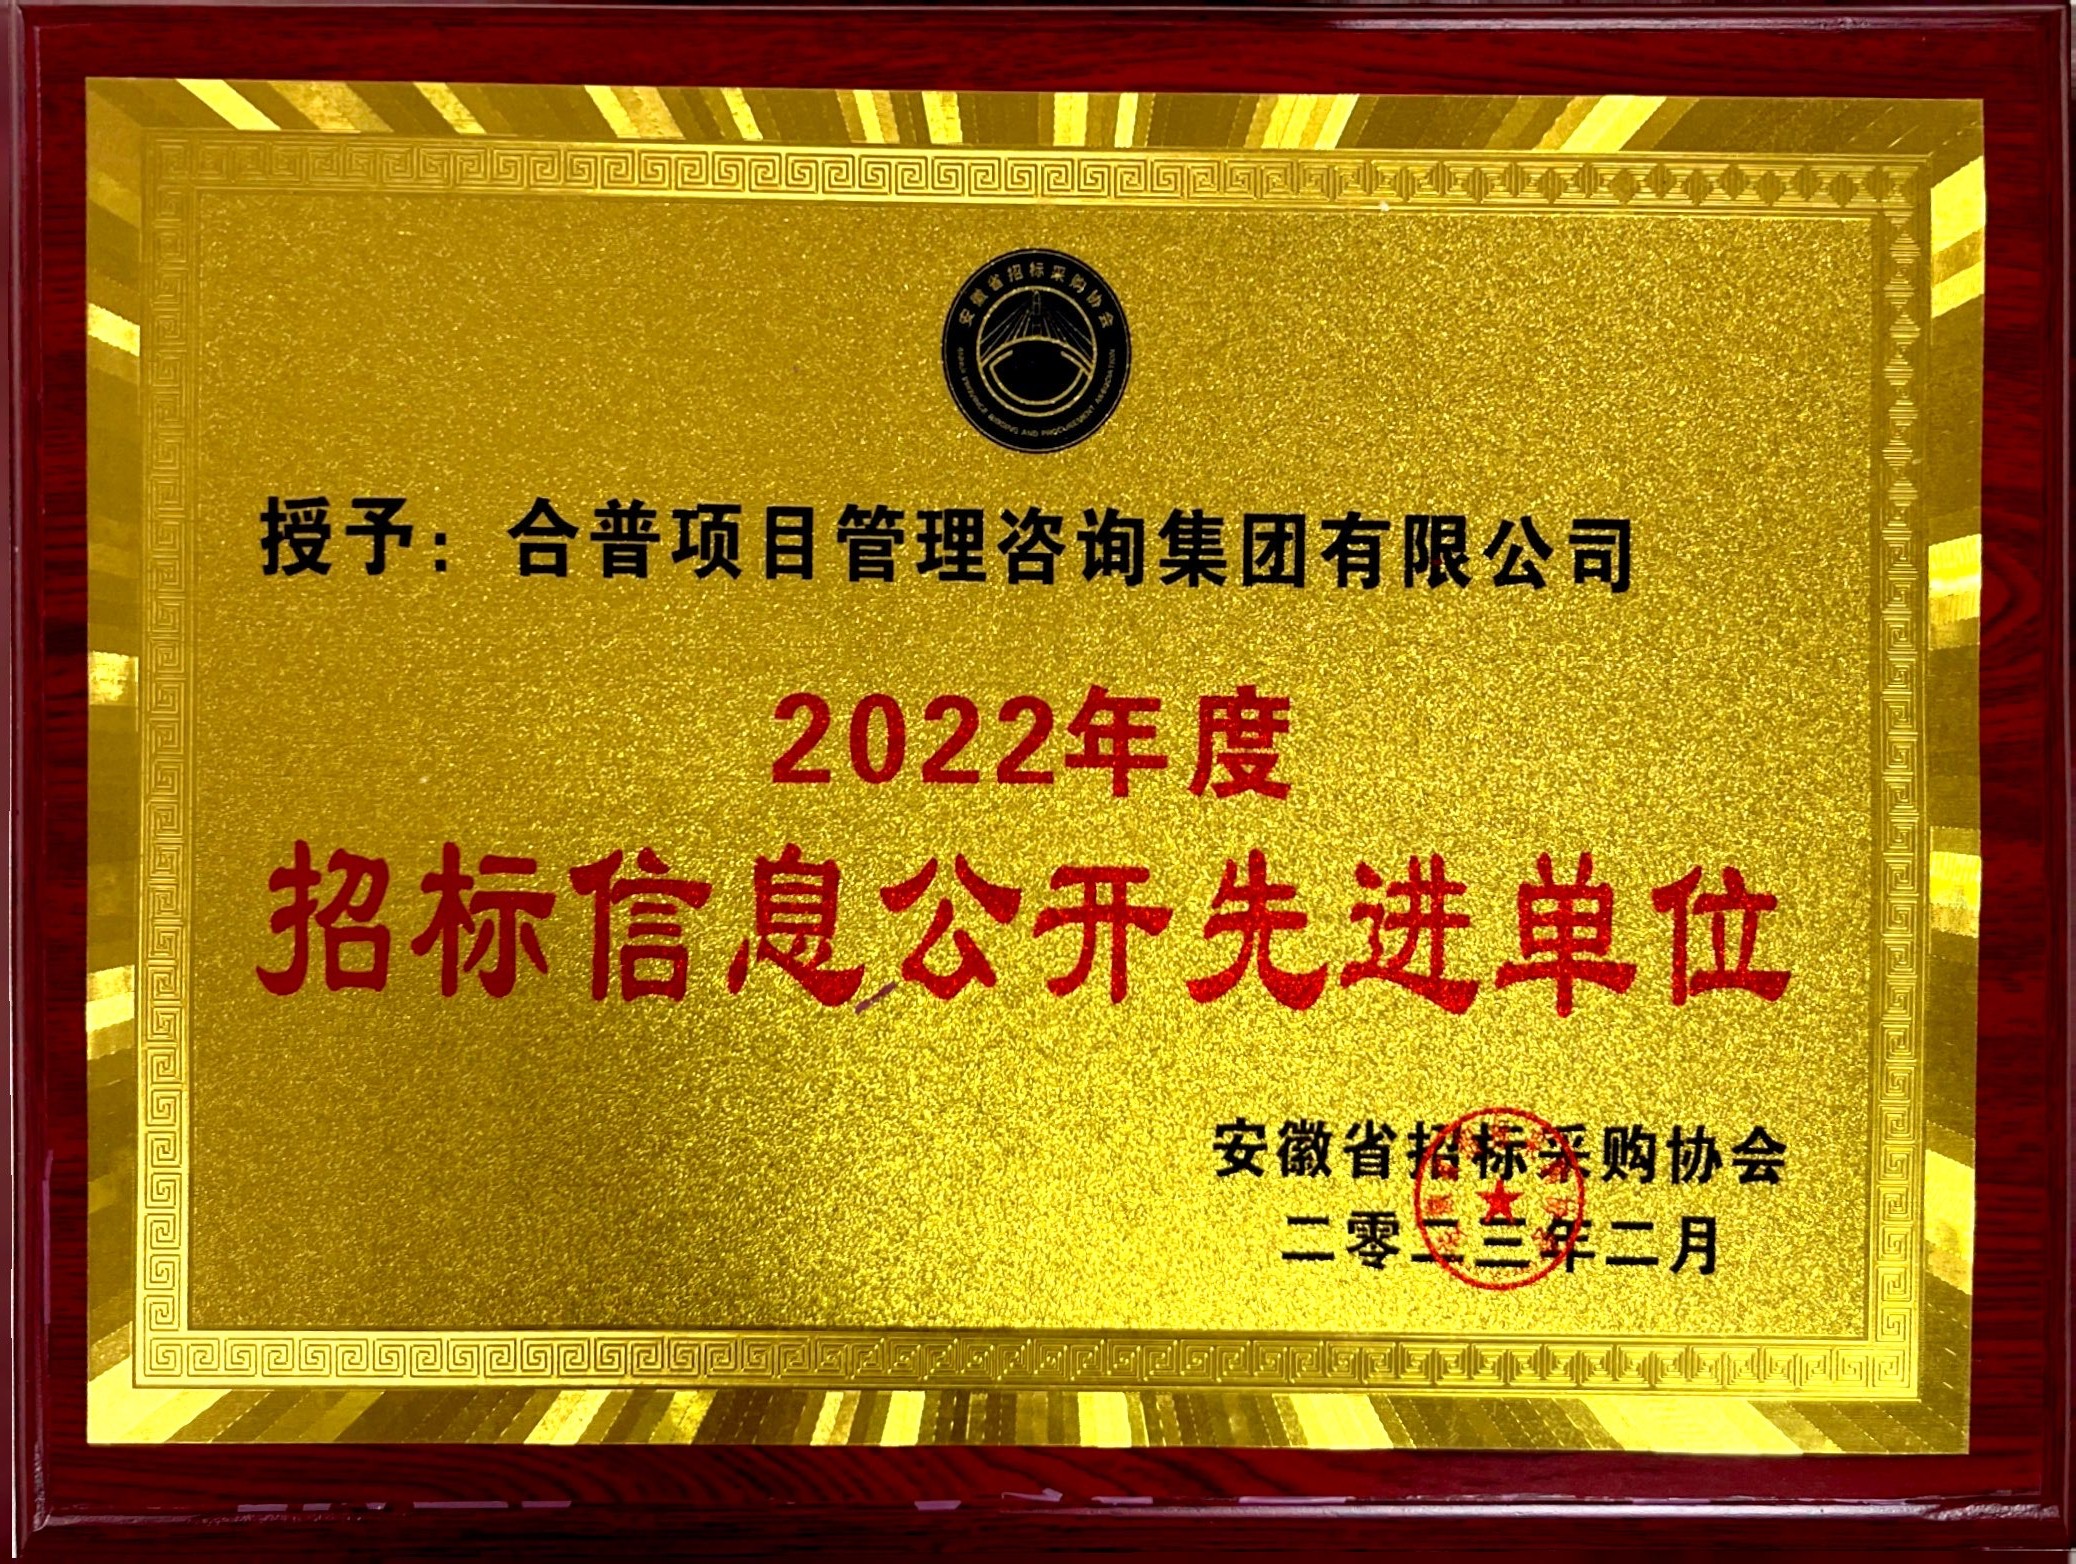 2022年度  “招标信息公开先进单位”